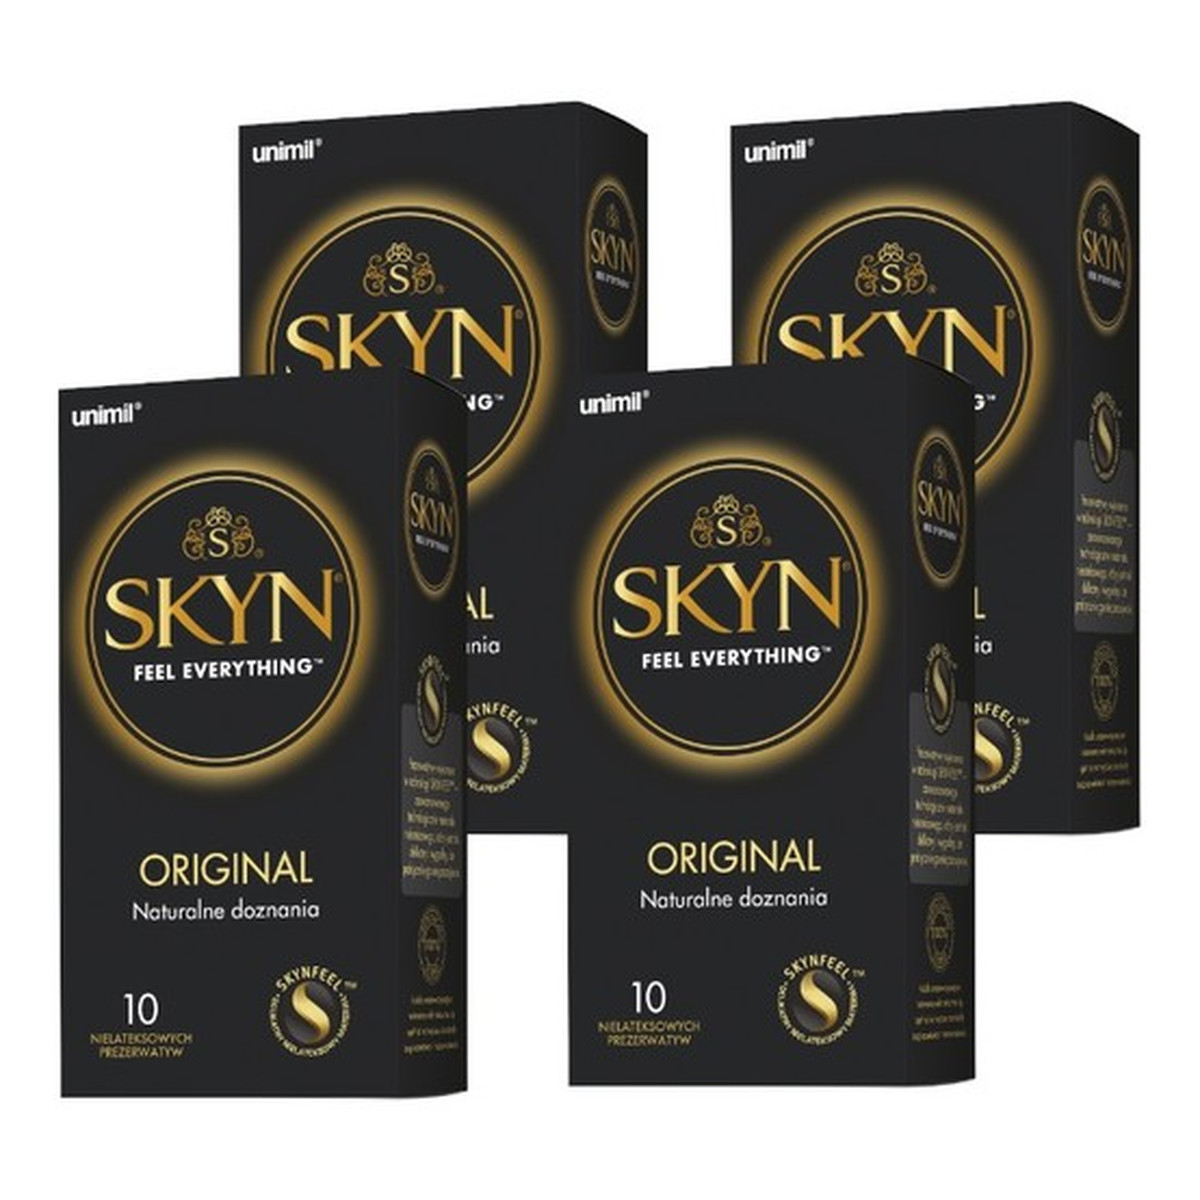 Unimil Skyn Original nielateksowe prezerwatywy 40szt